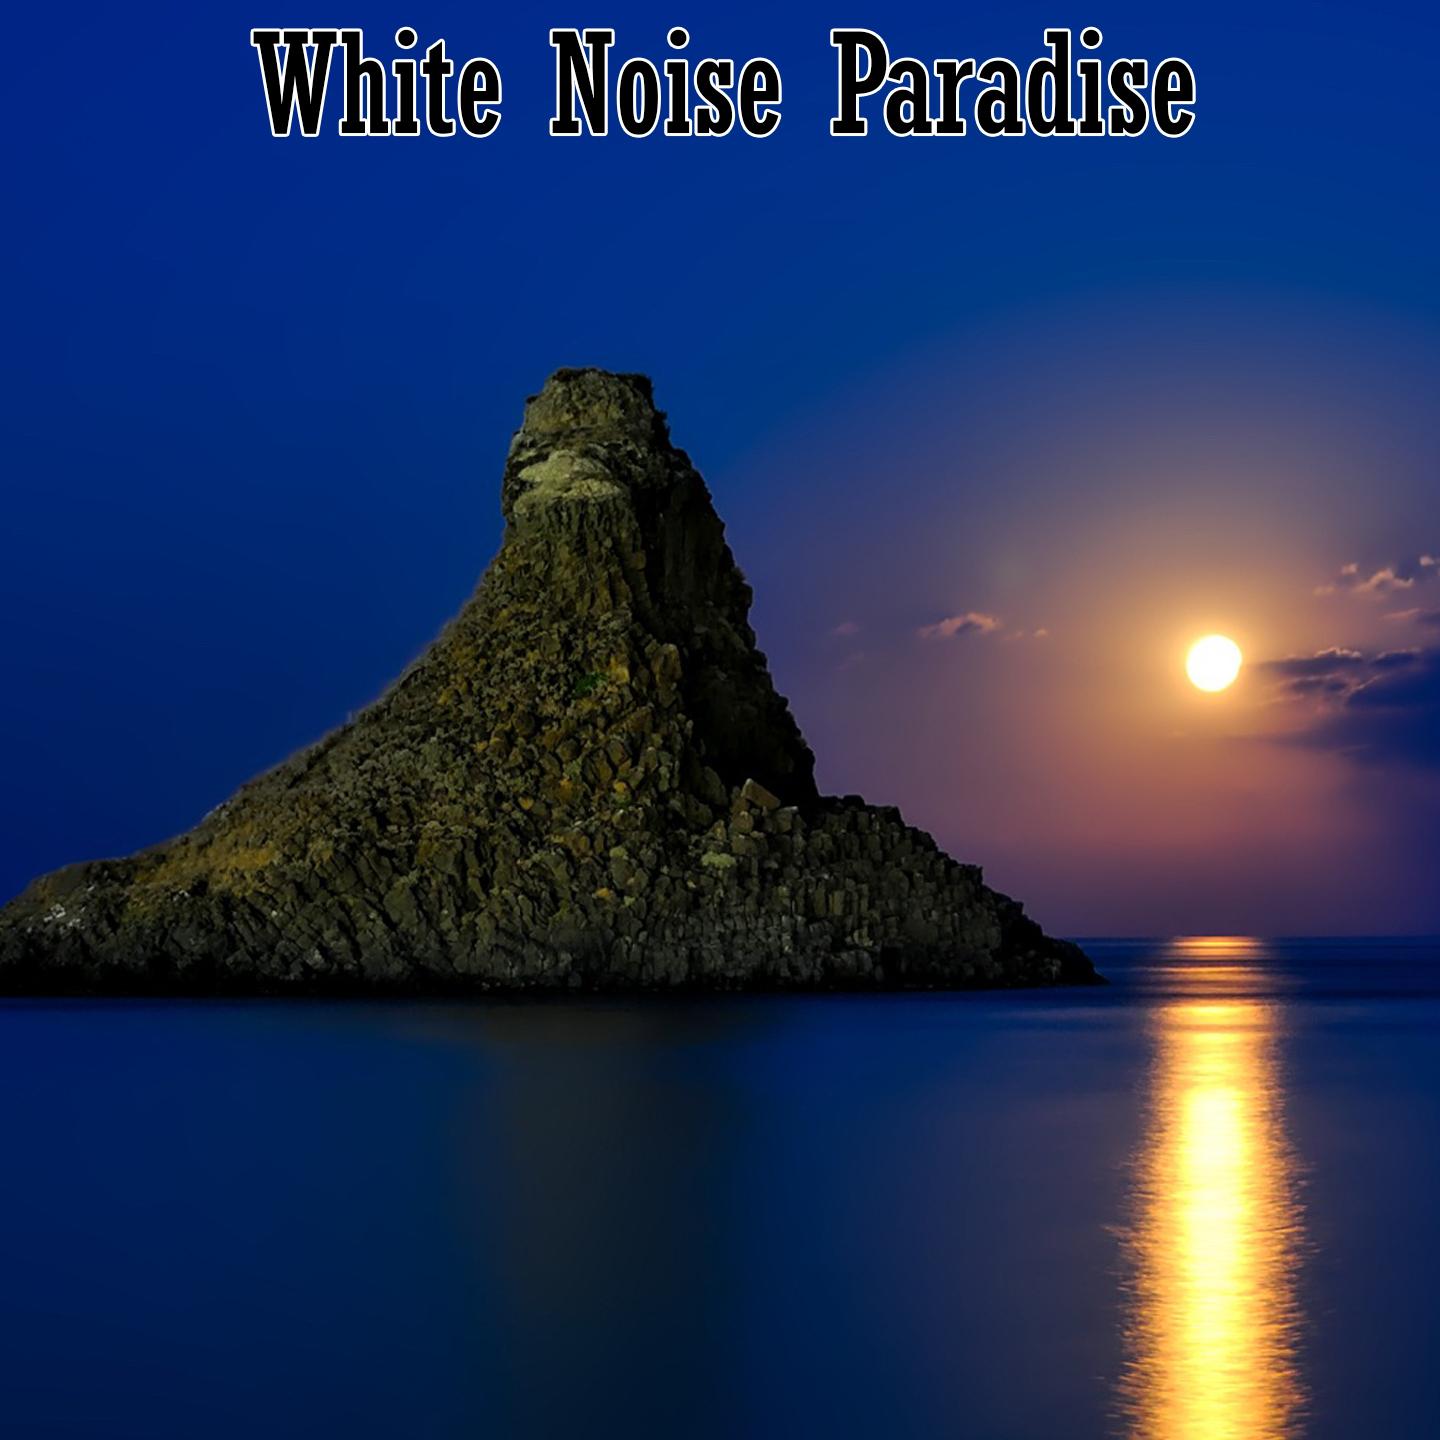 White Noise Paradise